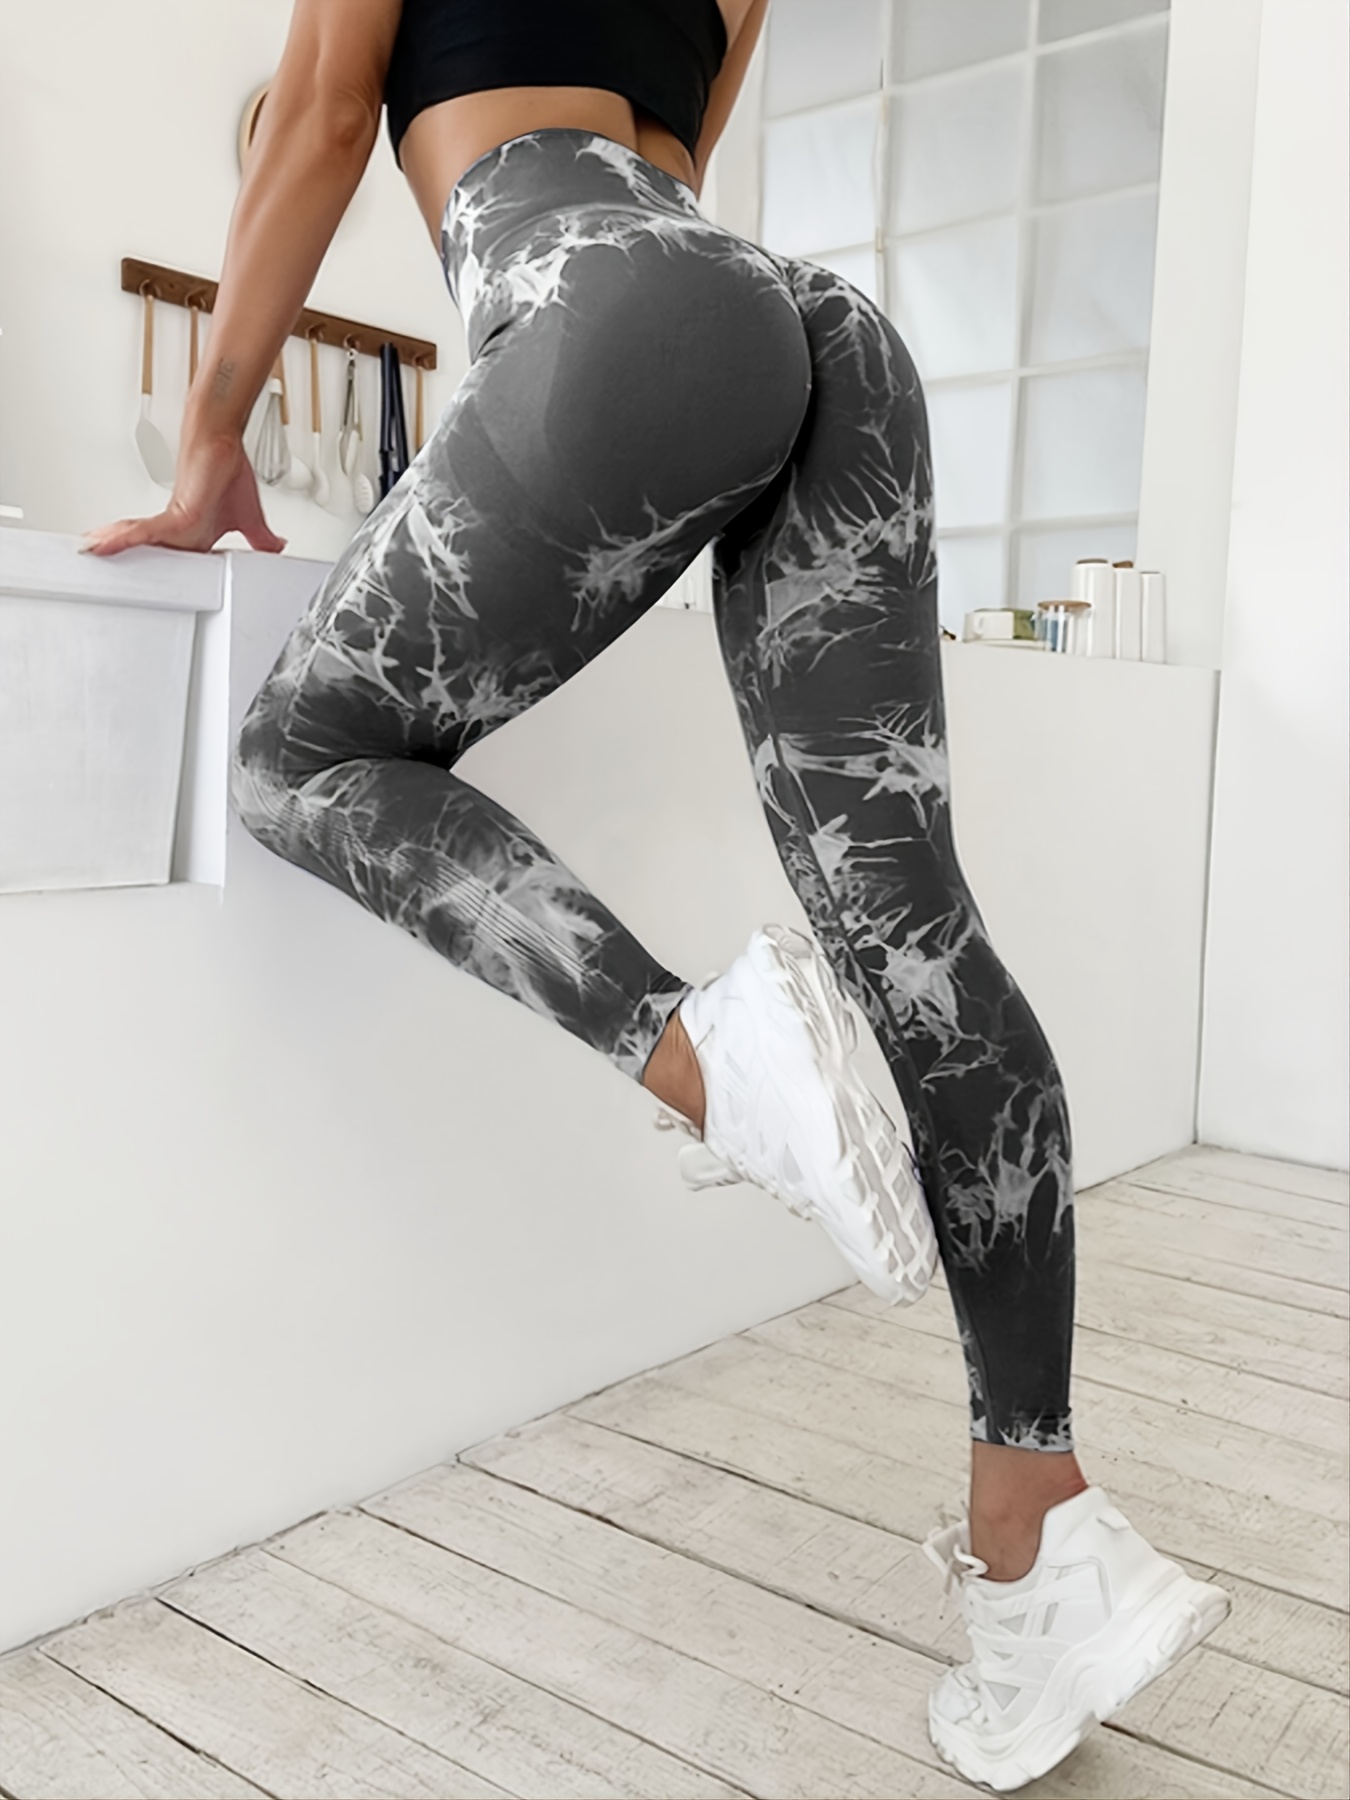 Legging for Women Yoga Pants Workout High Waist Black Leggings